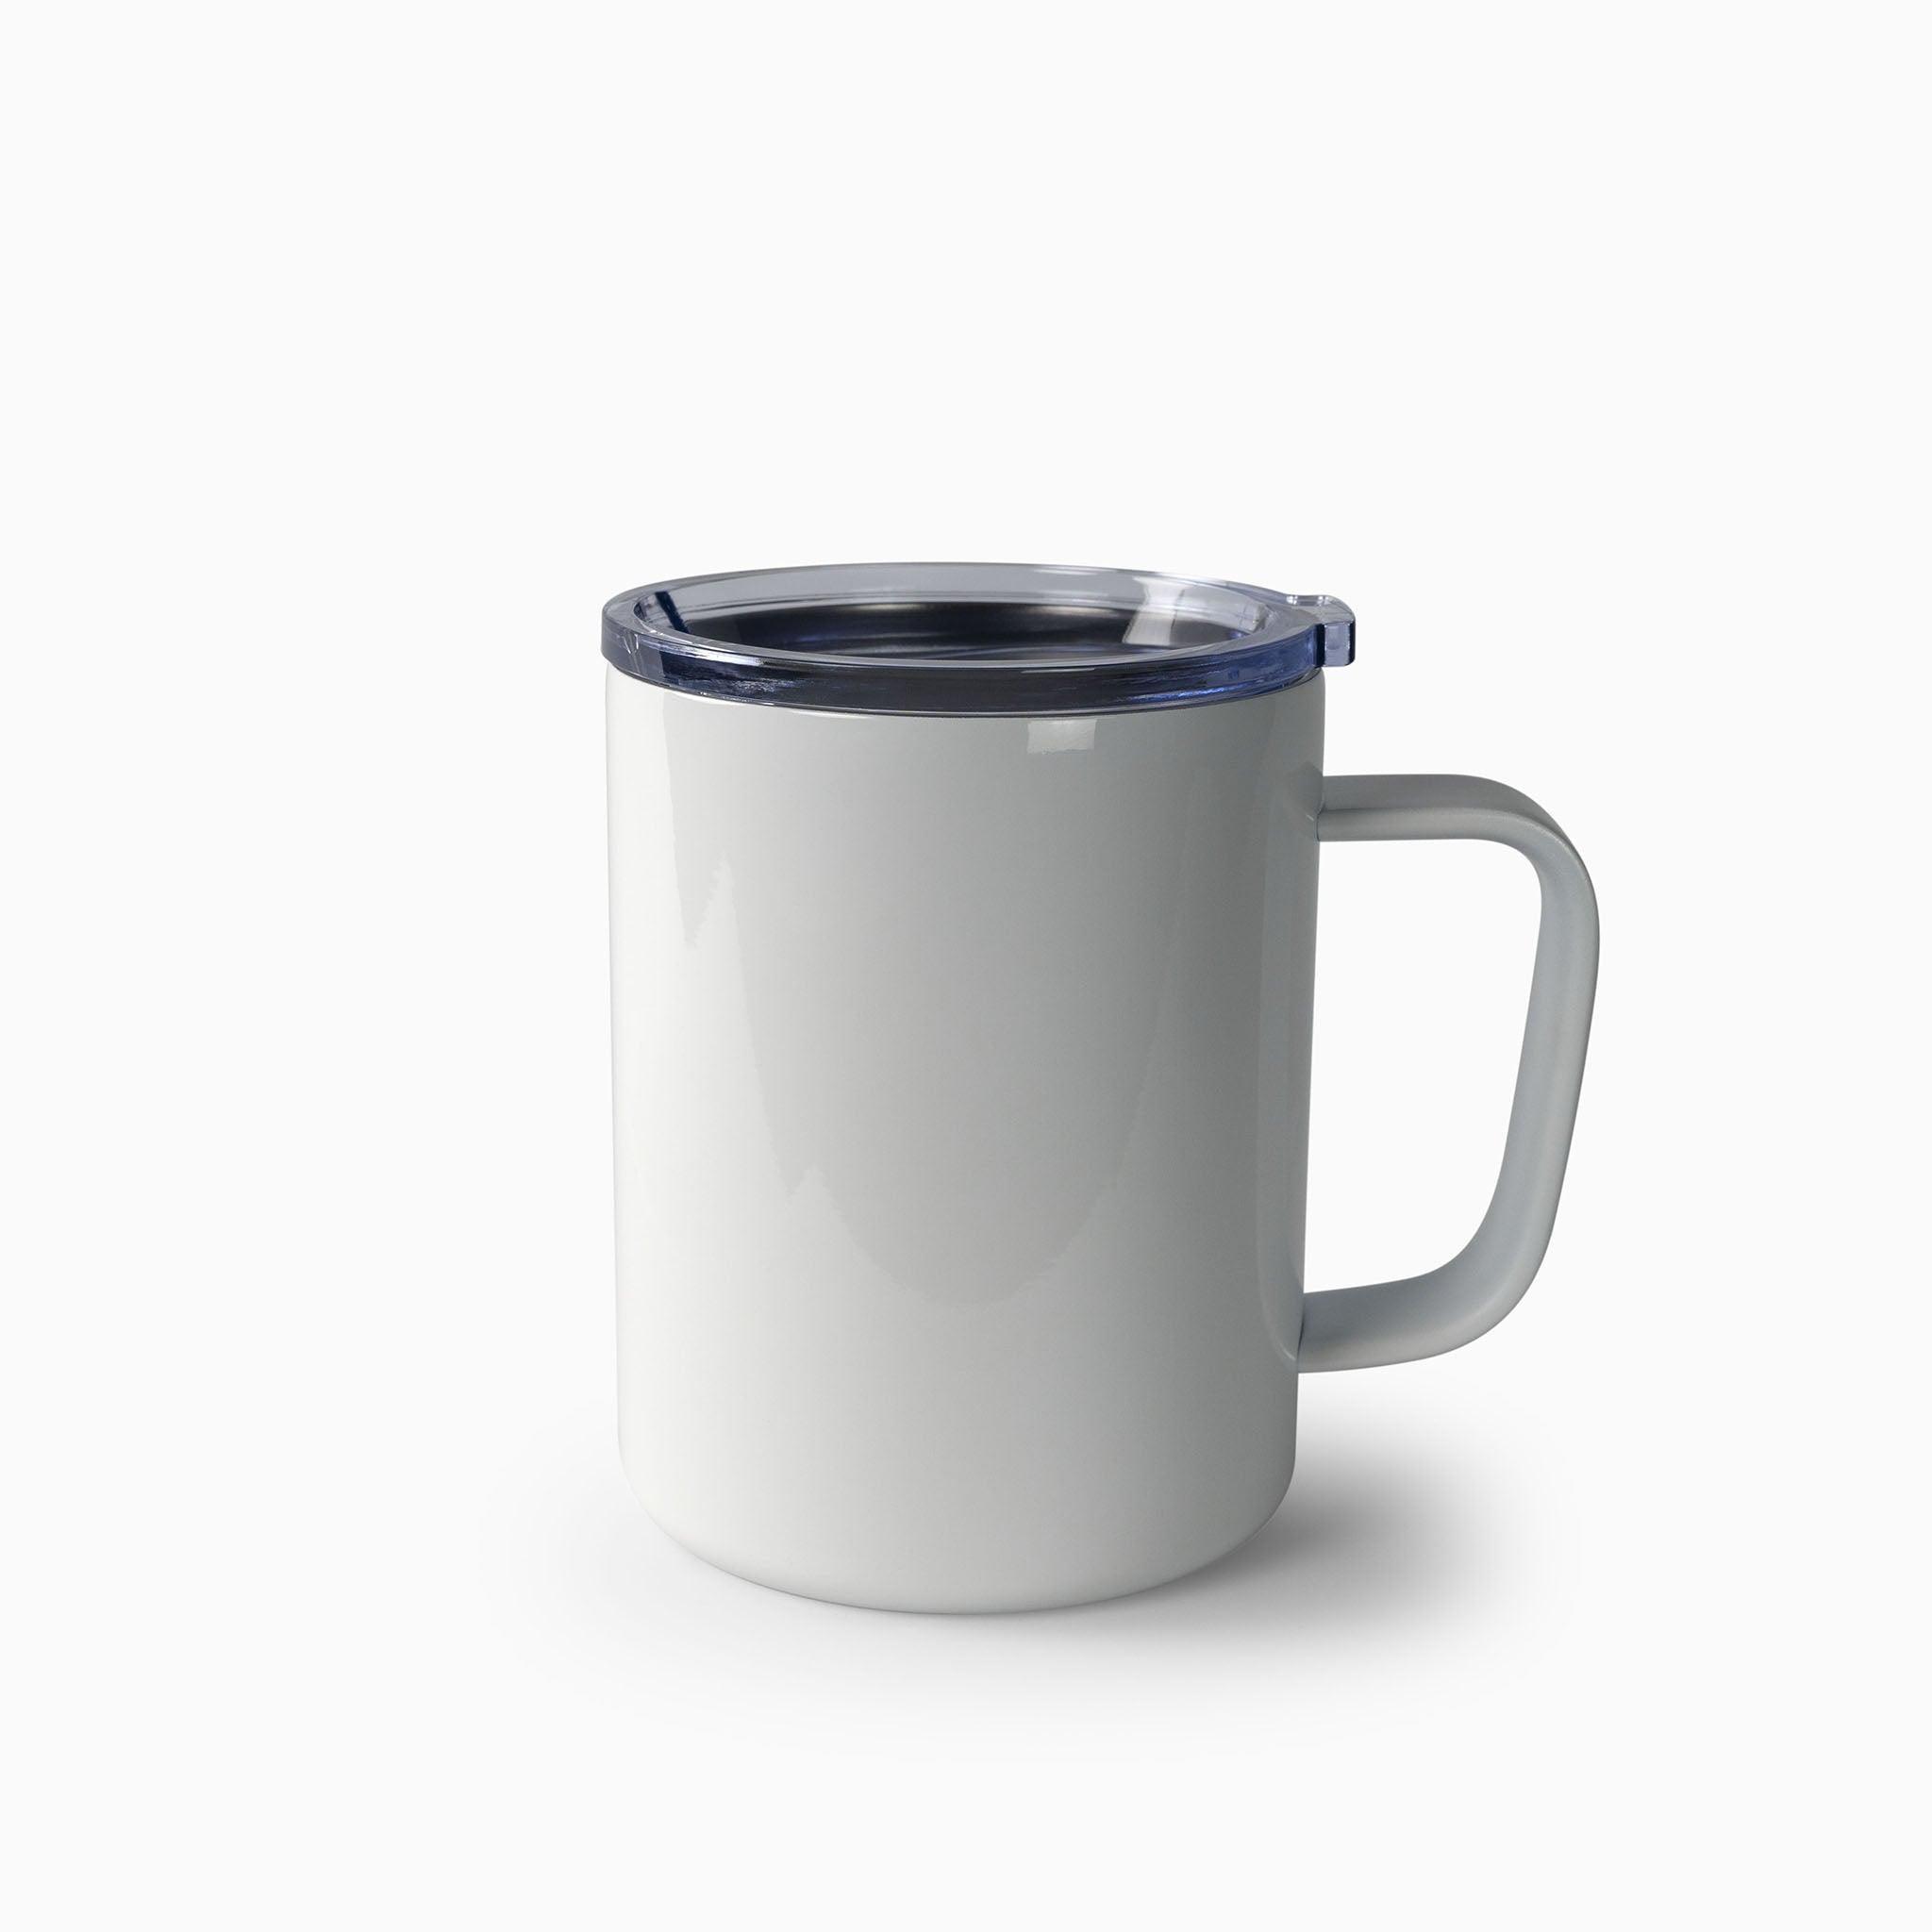 10 oz. Glass Mug with Handle Sublimation Blank